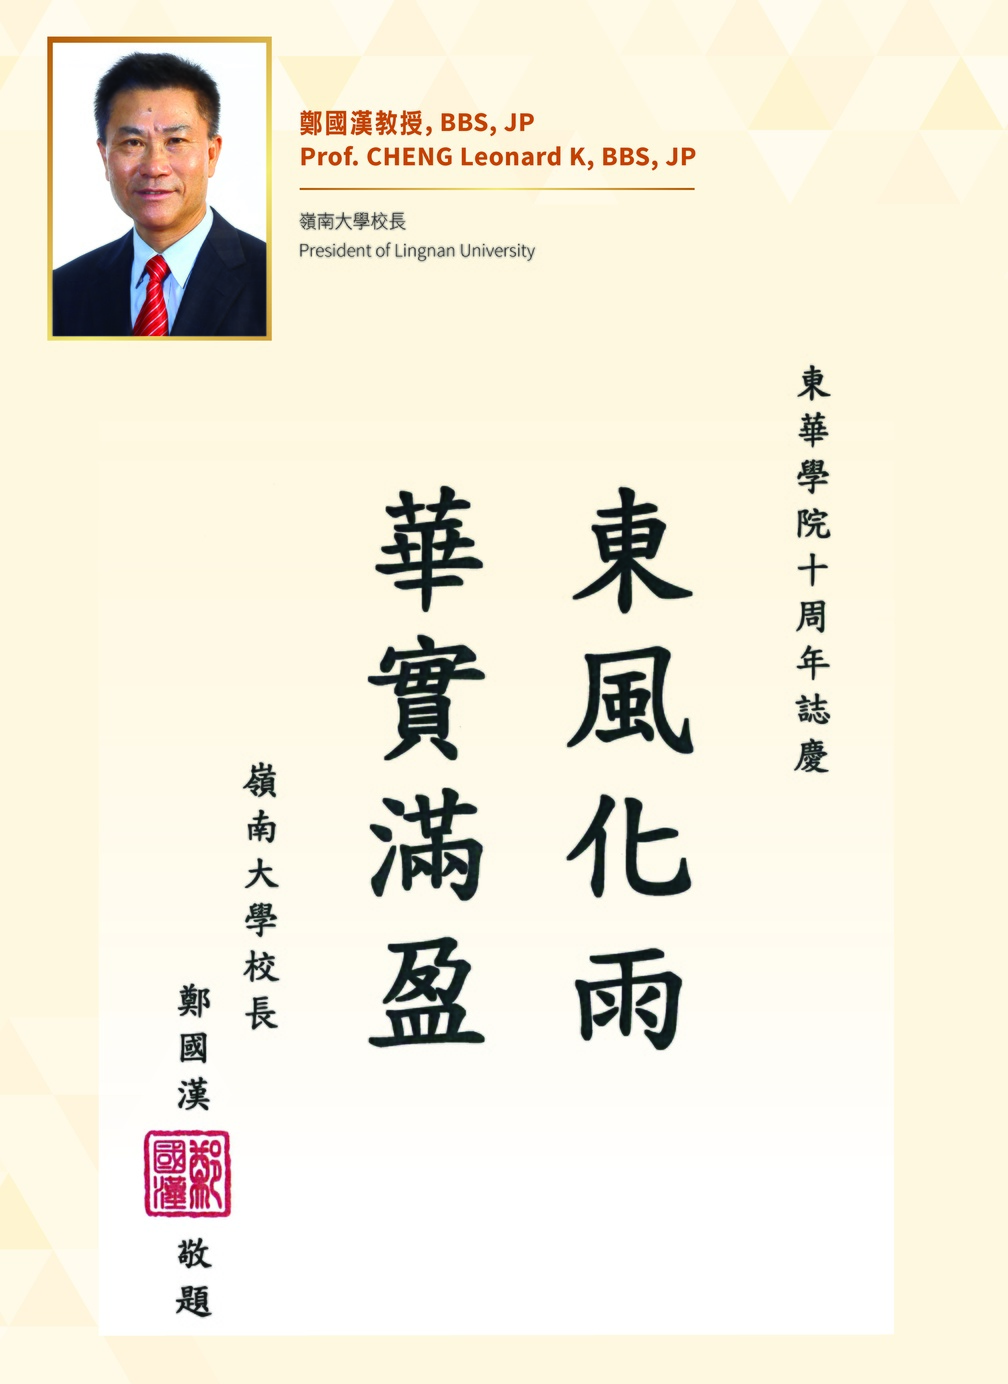 President of Lingnan University